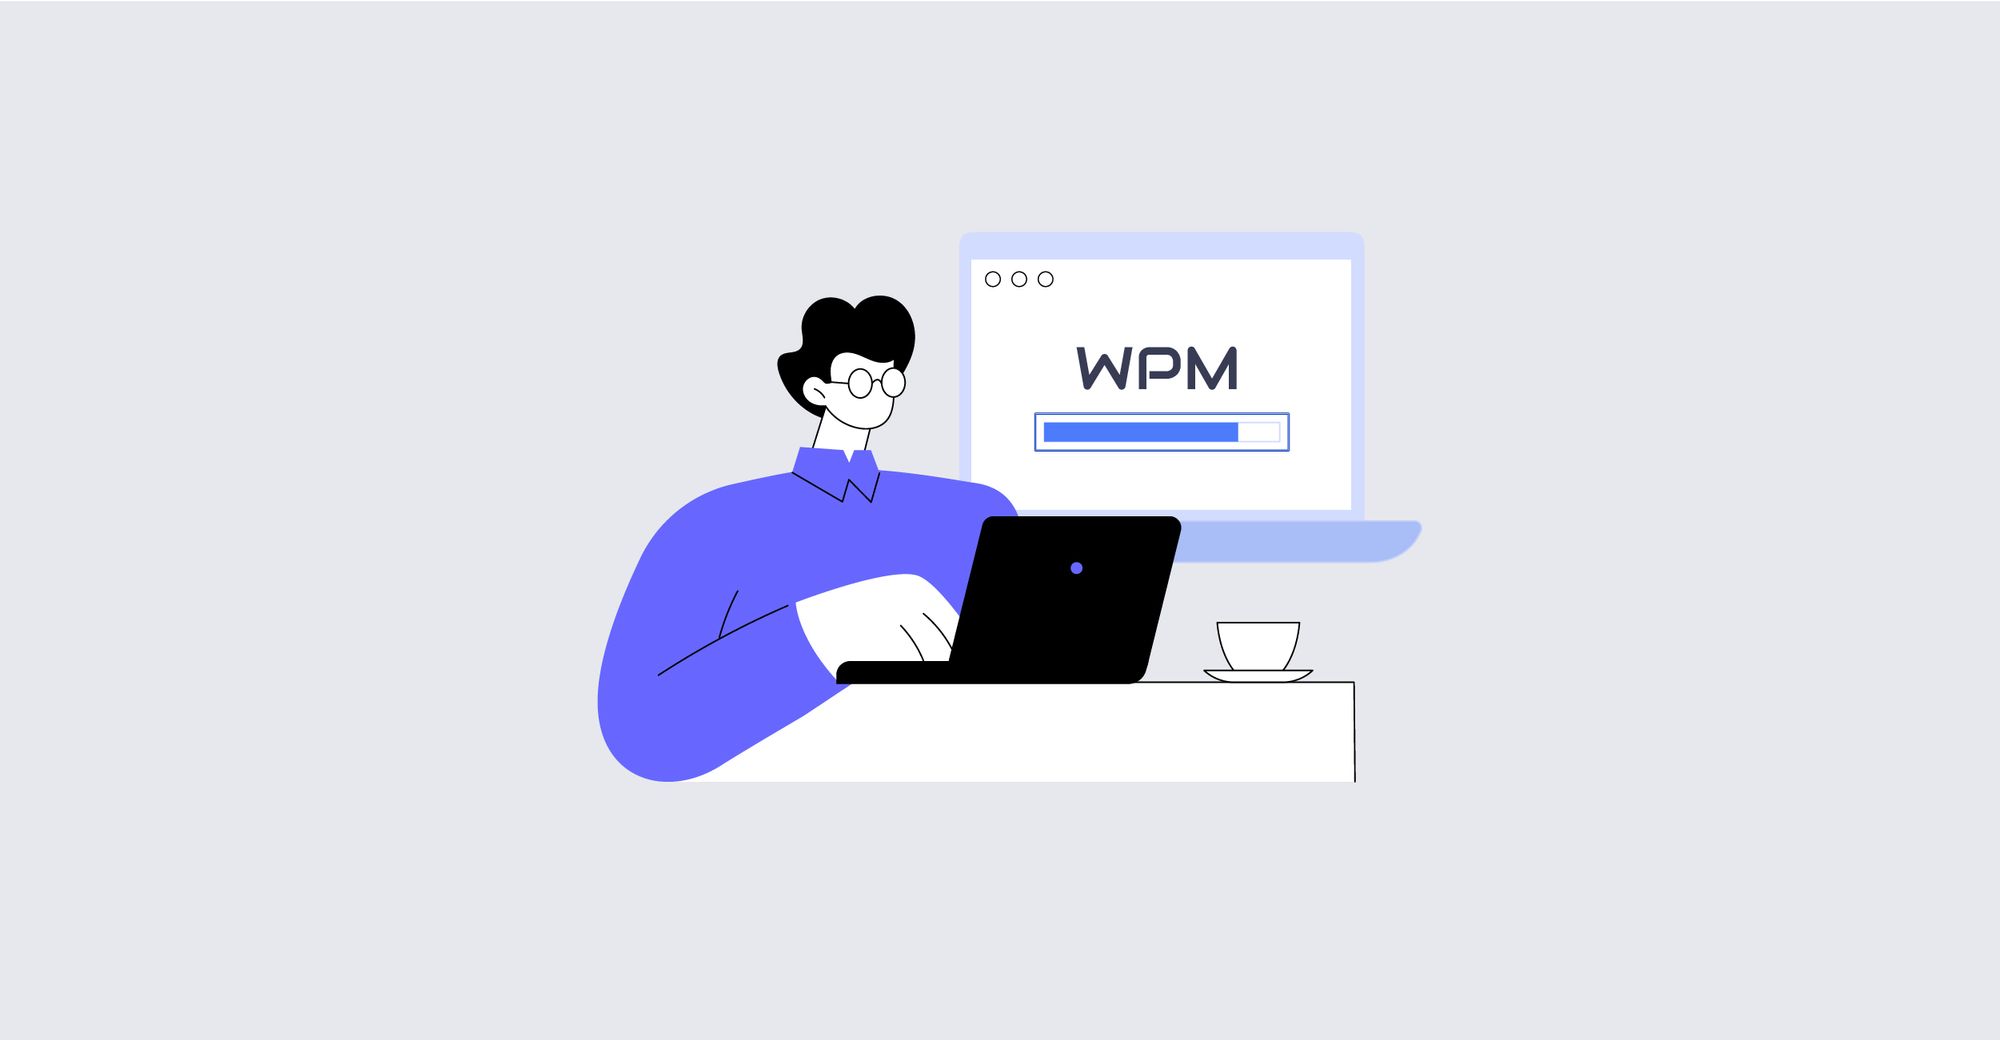 웹 성능 모니터링 솔루션 WPM 완전 정복 (설치부터 주요 메뉴까지!)